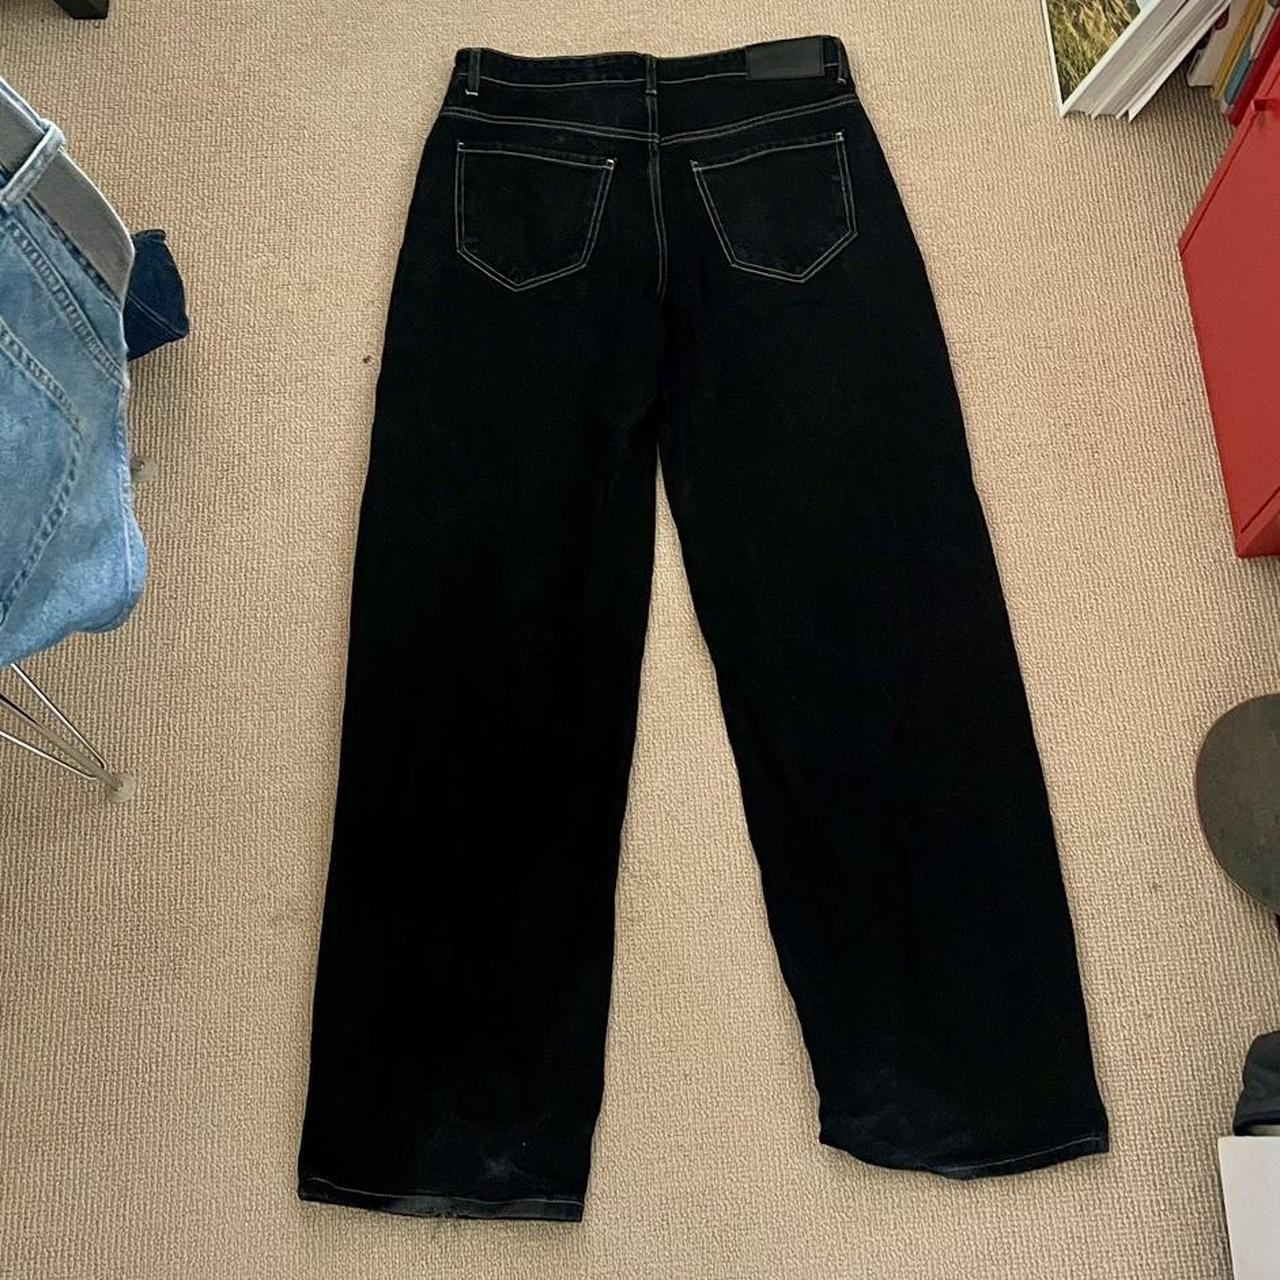 Wrld Wide Black baggy jeans Size 34 Good... - Depop